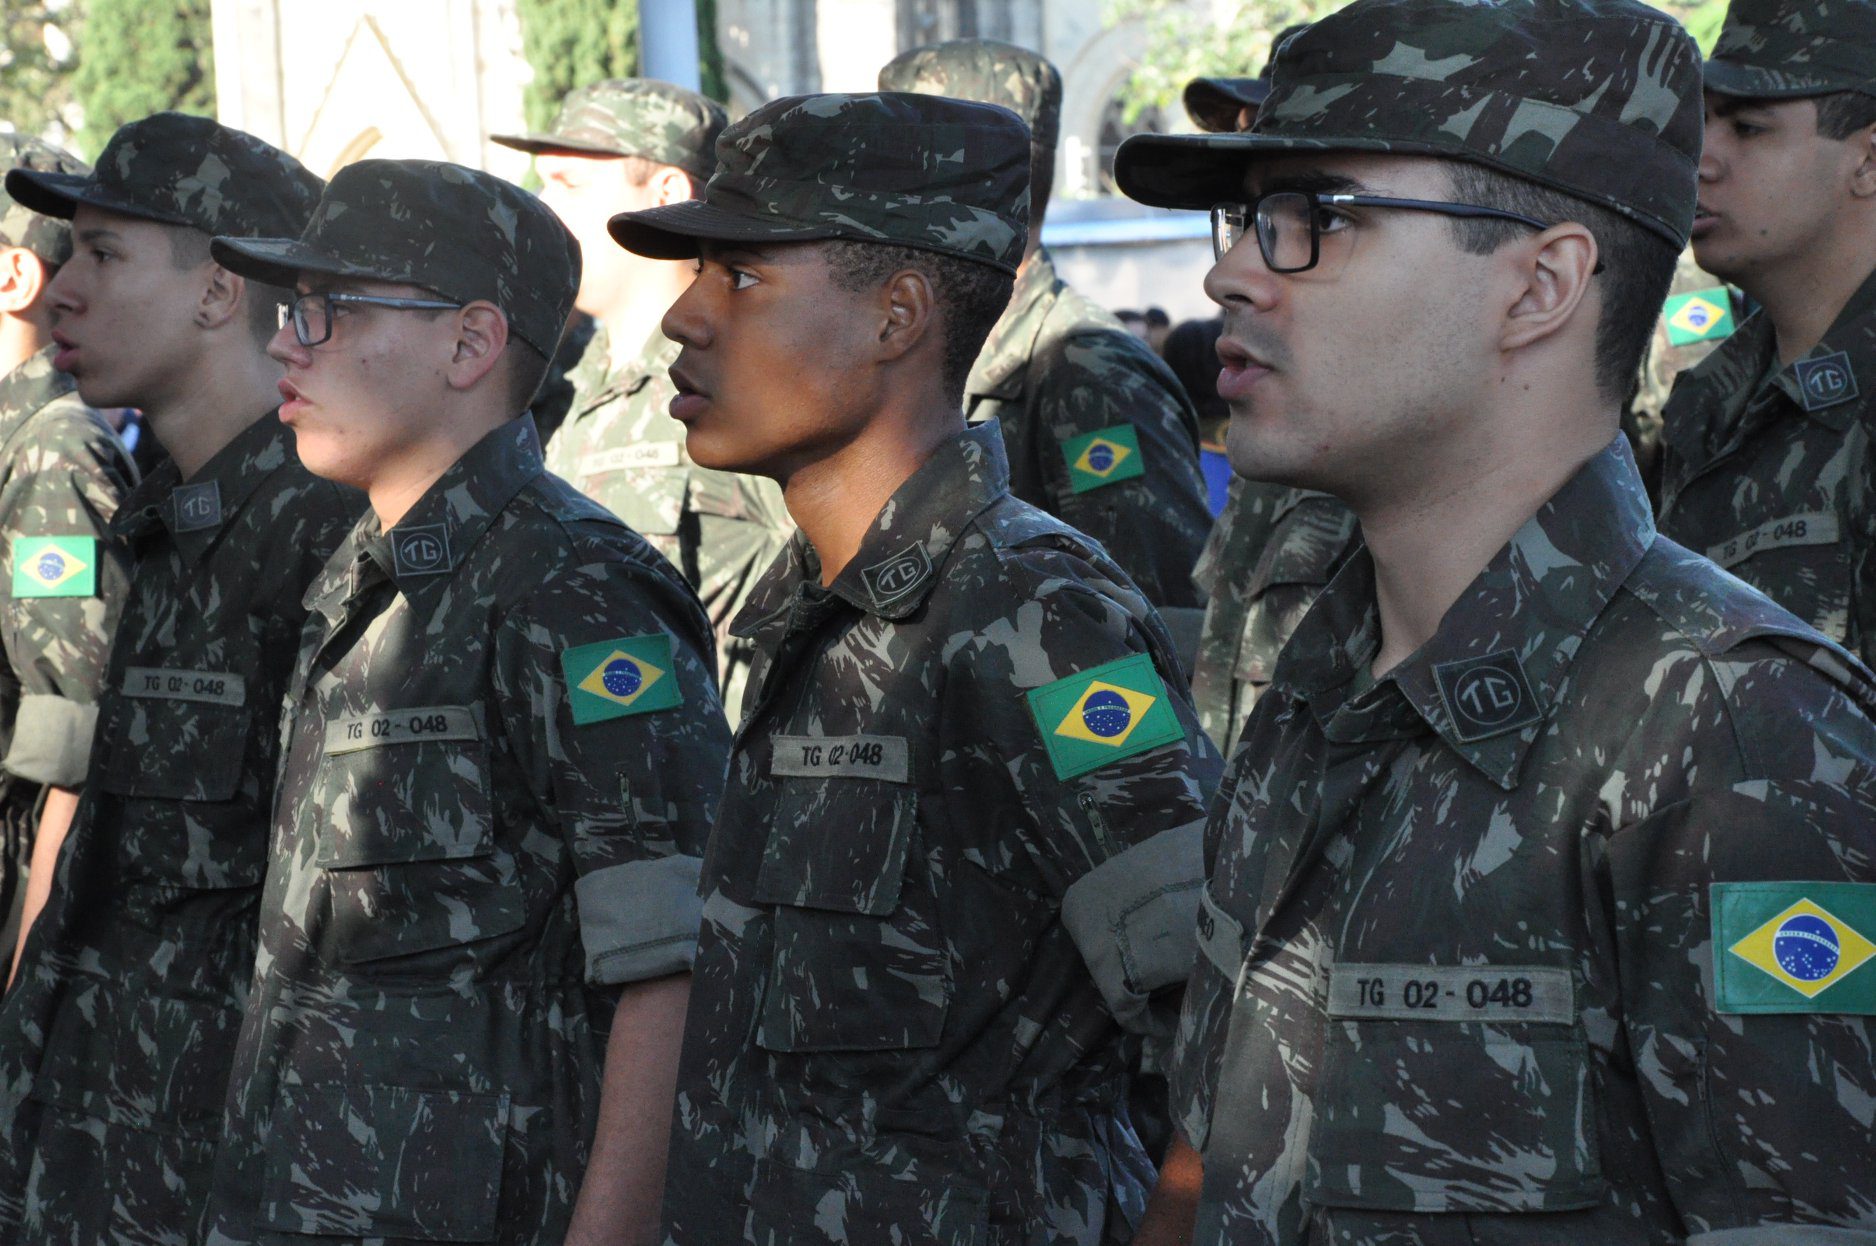 Jovens alistados em Gravataí embarcam dia 27 para o serviço militar na fronteira